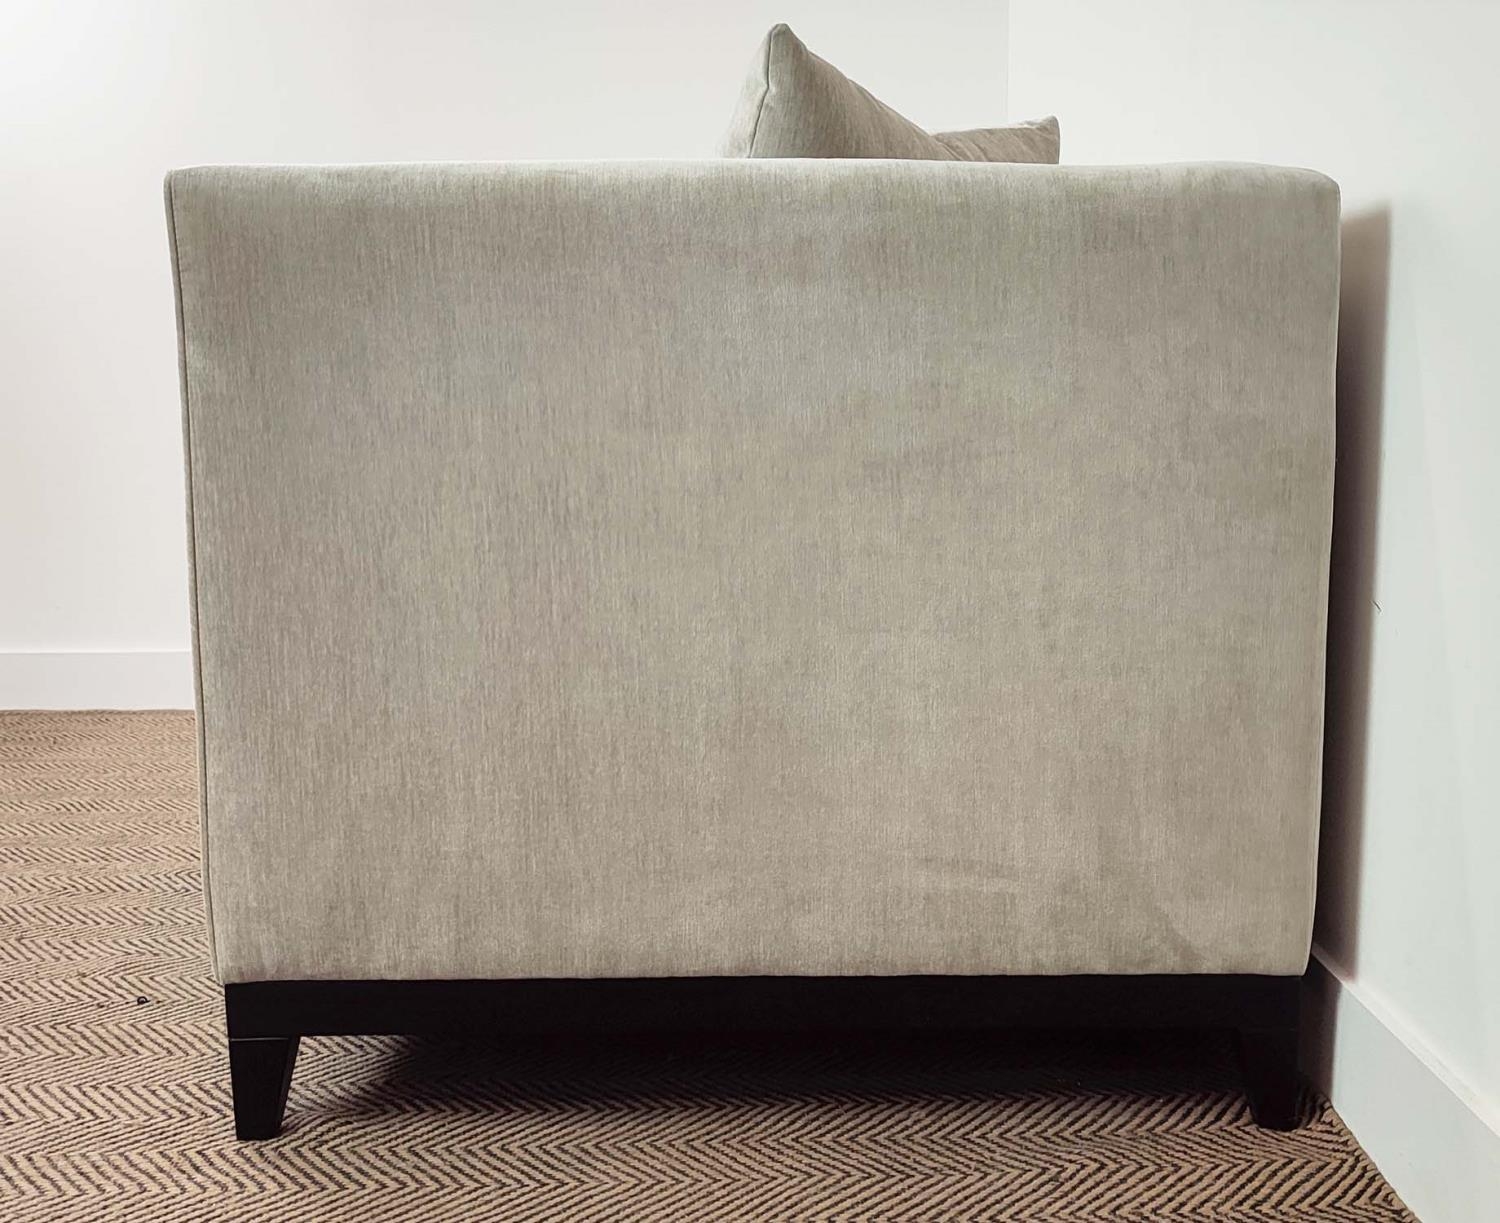 SOFA, grey fabric upholstered, ebonised supports, 160cm x 85cm x 75cm. - Image 4 of 7